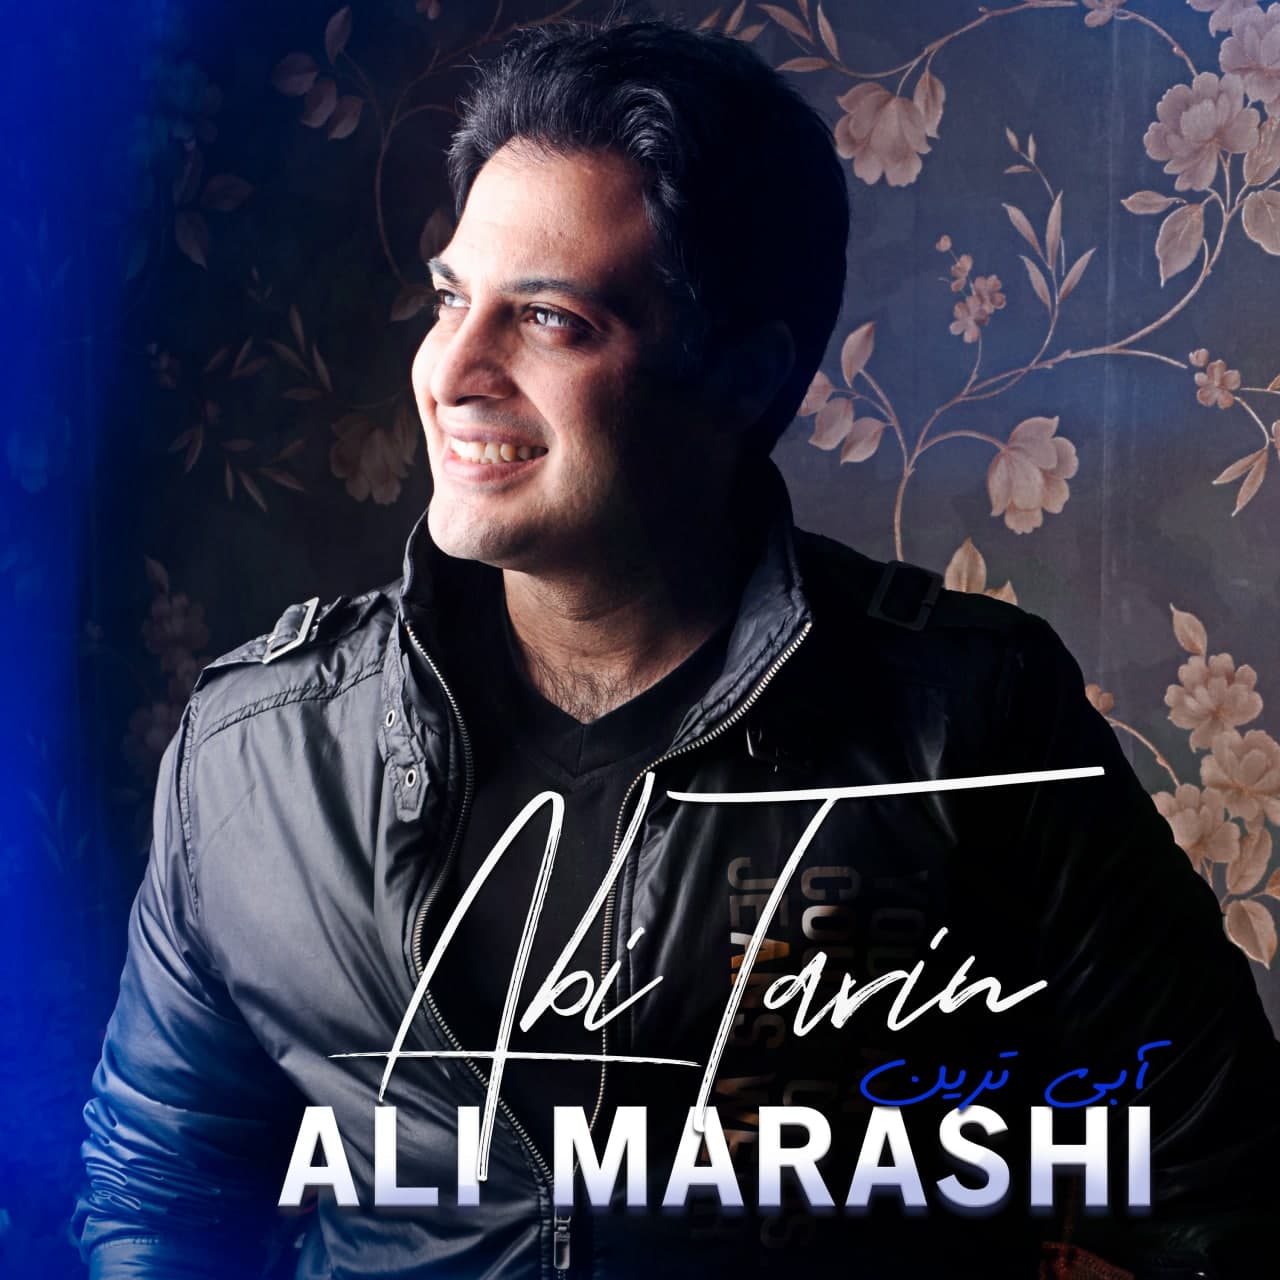  دانلود آهنگ جدید علی مرعشی - آبی ترین | Download New Music By Ali Marashi - Abi Tarin 